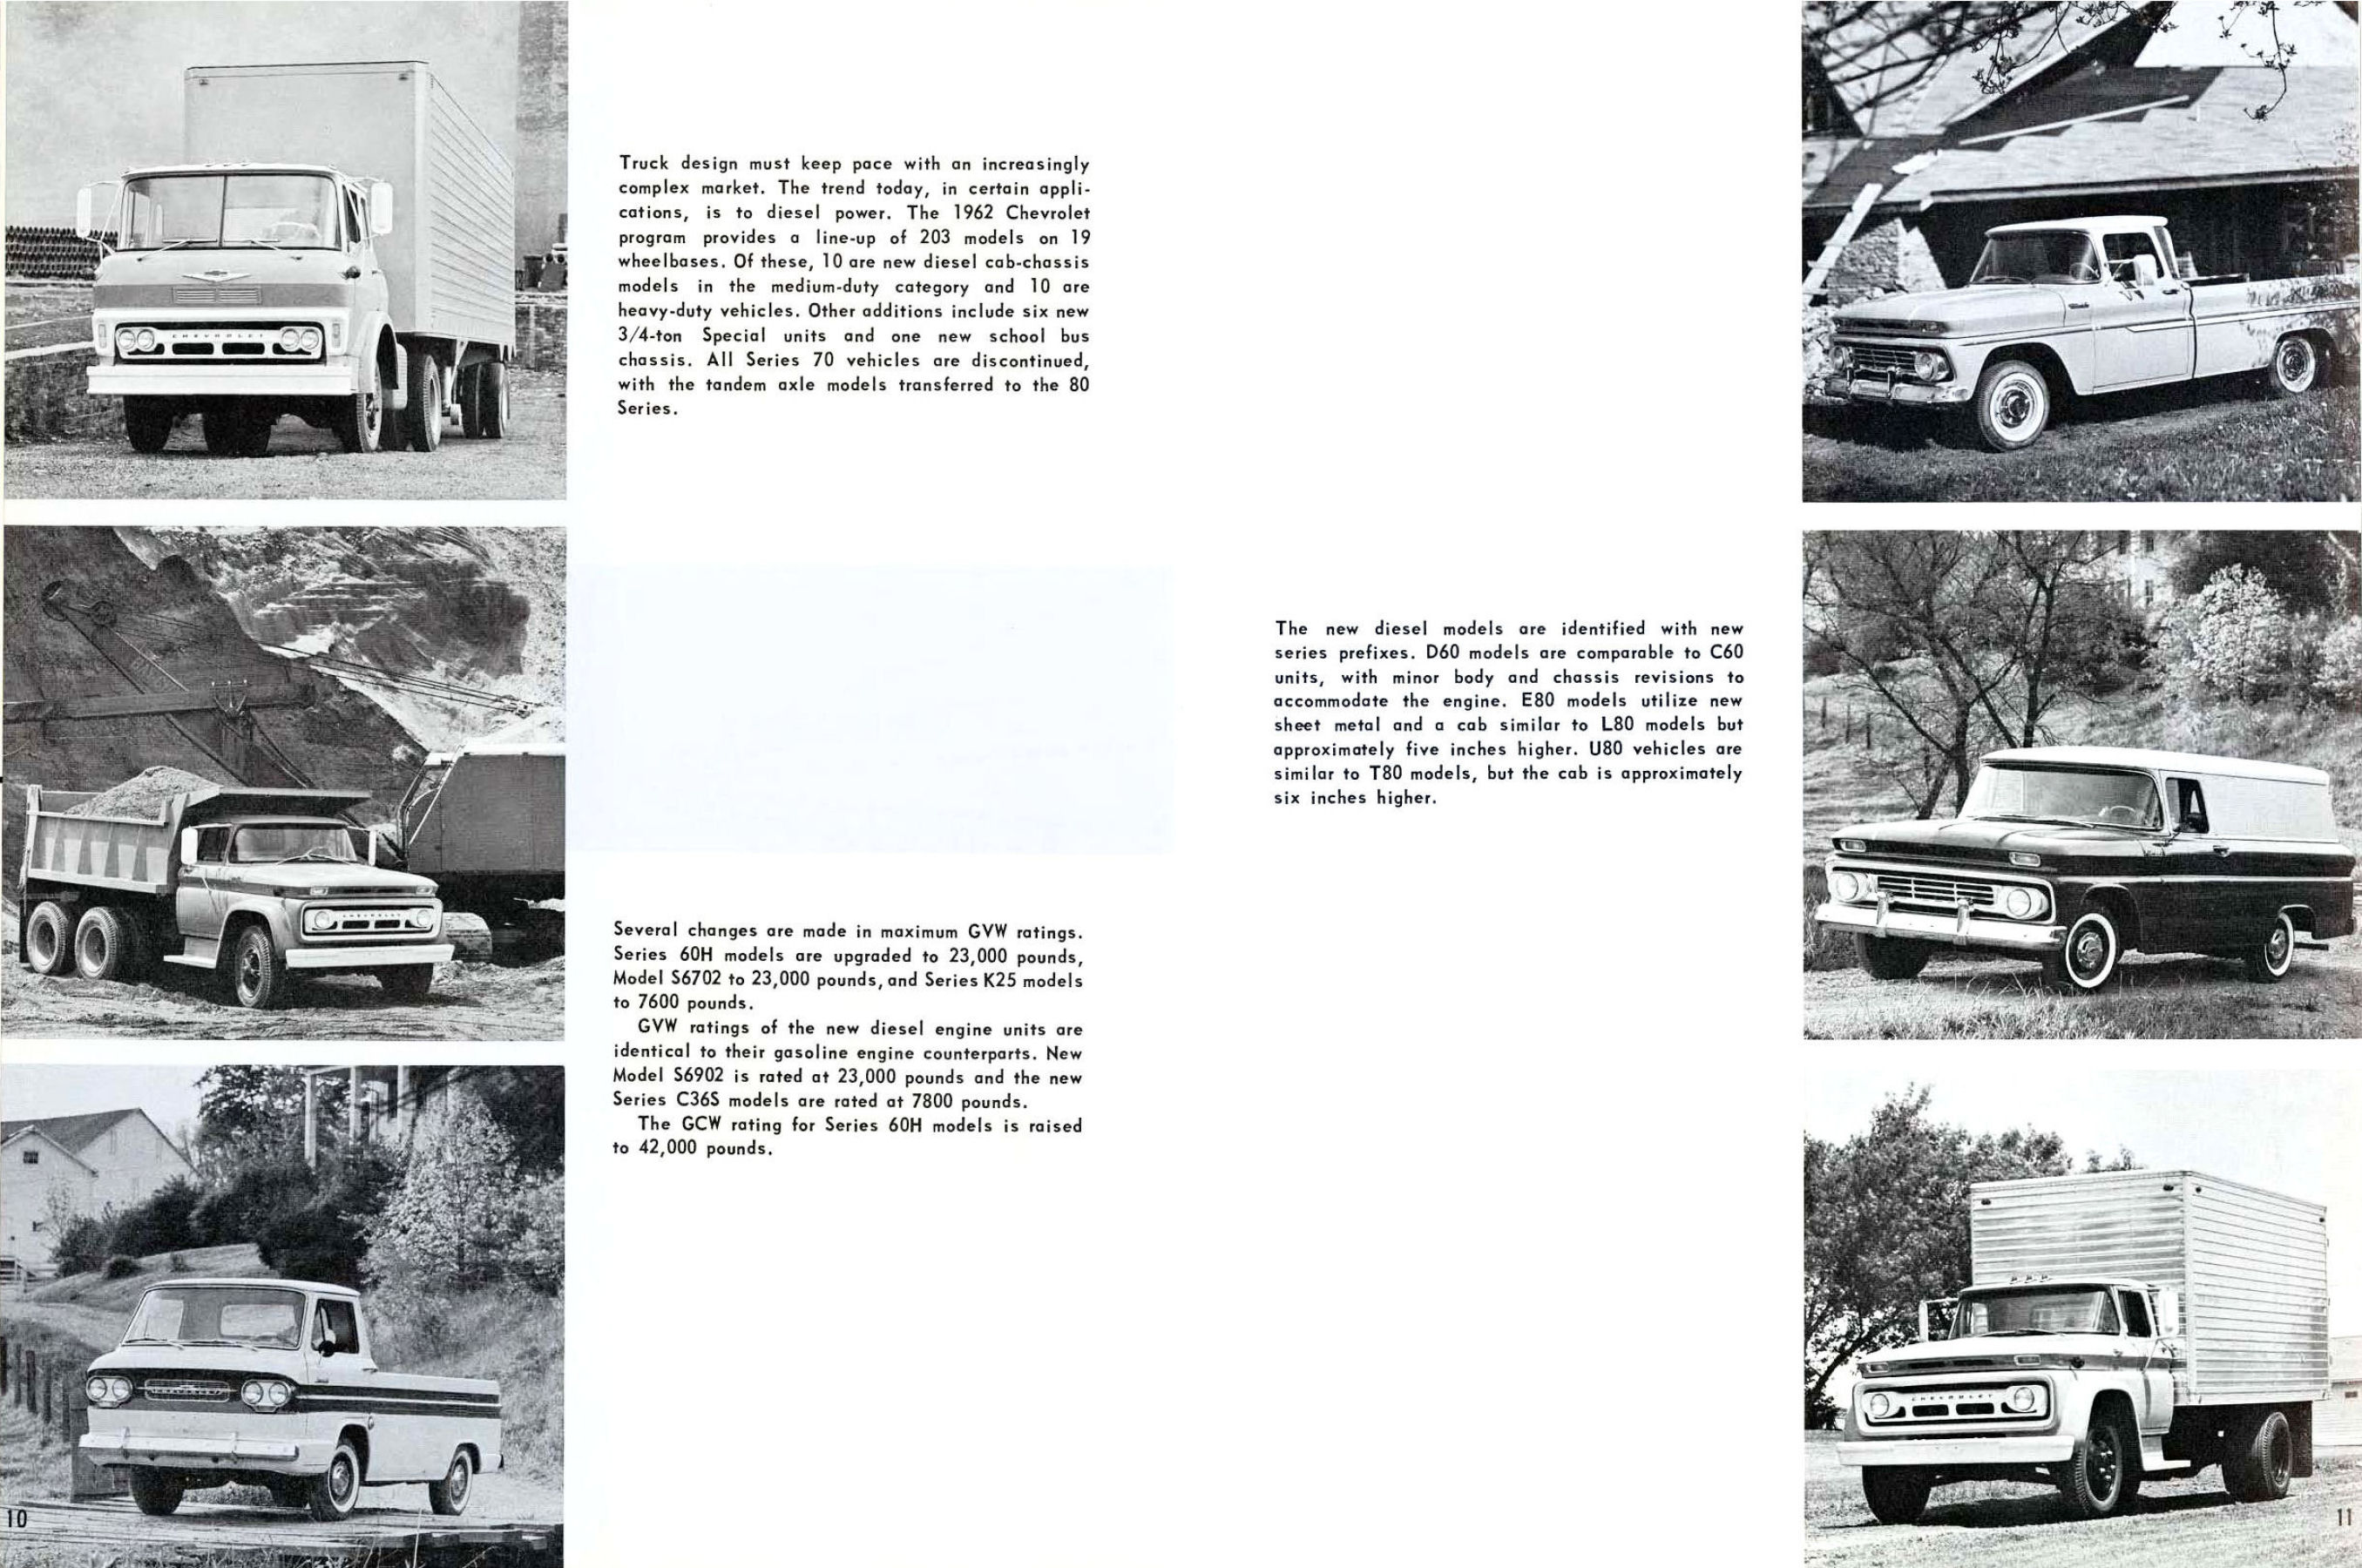 1962 Chevrolet Truck Engineering Features-10-11